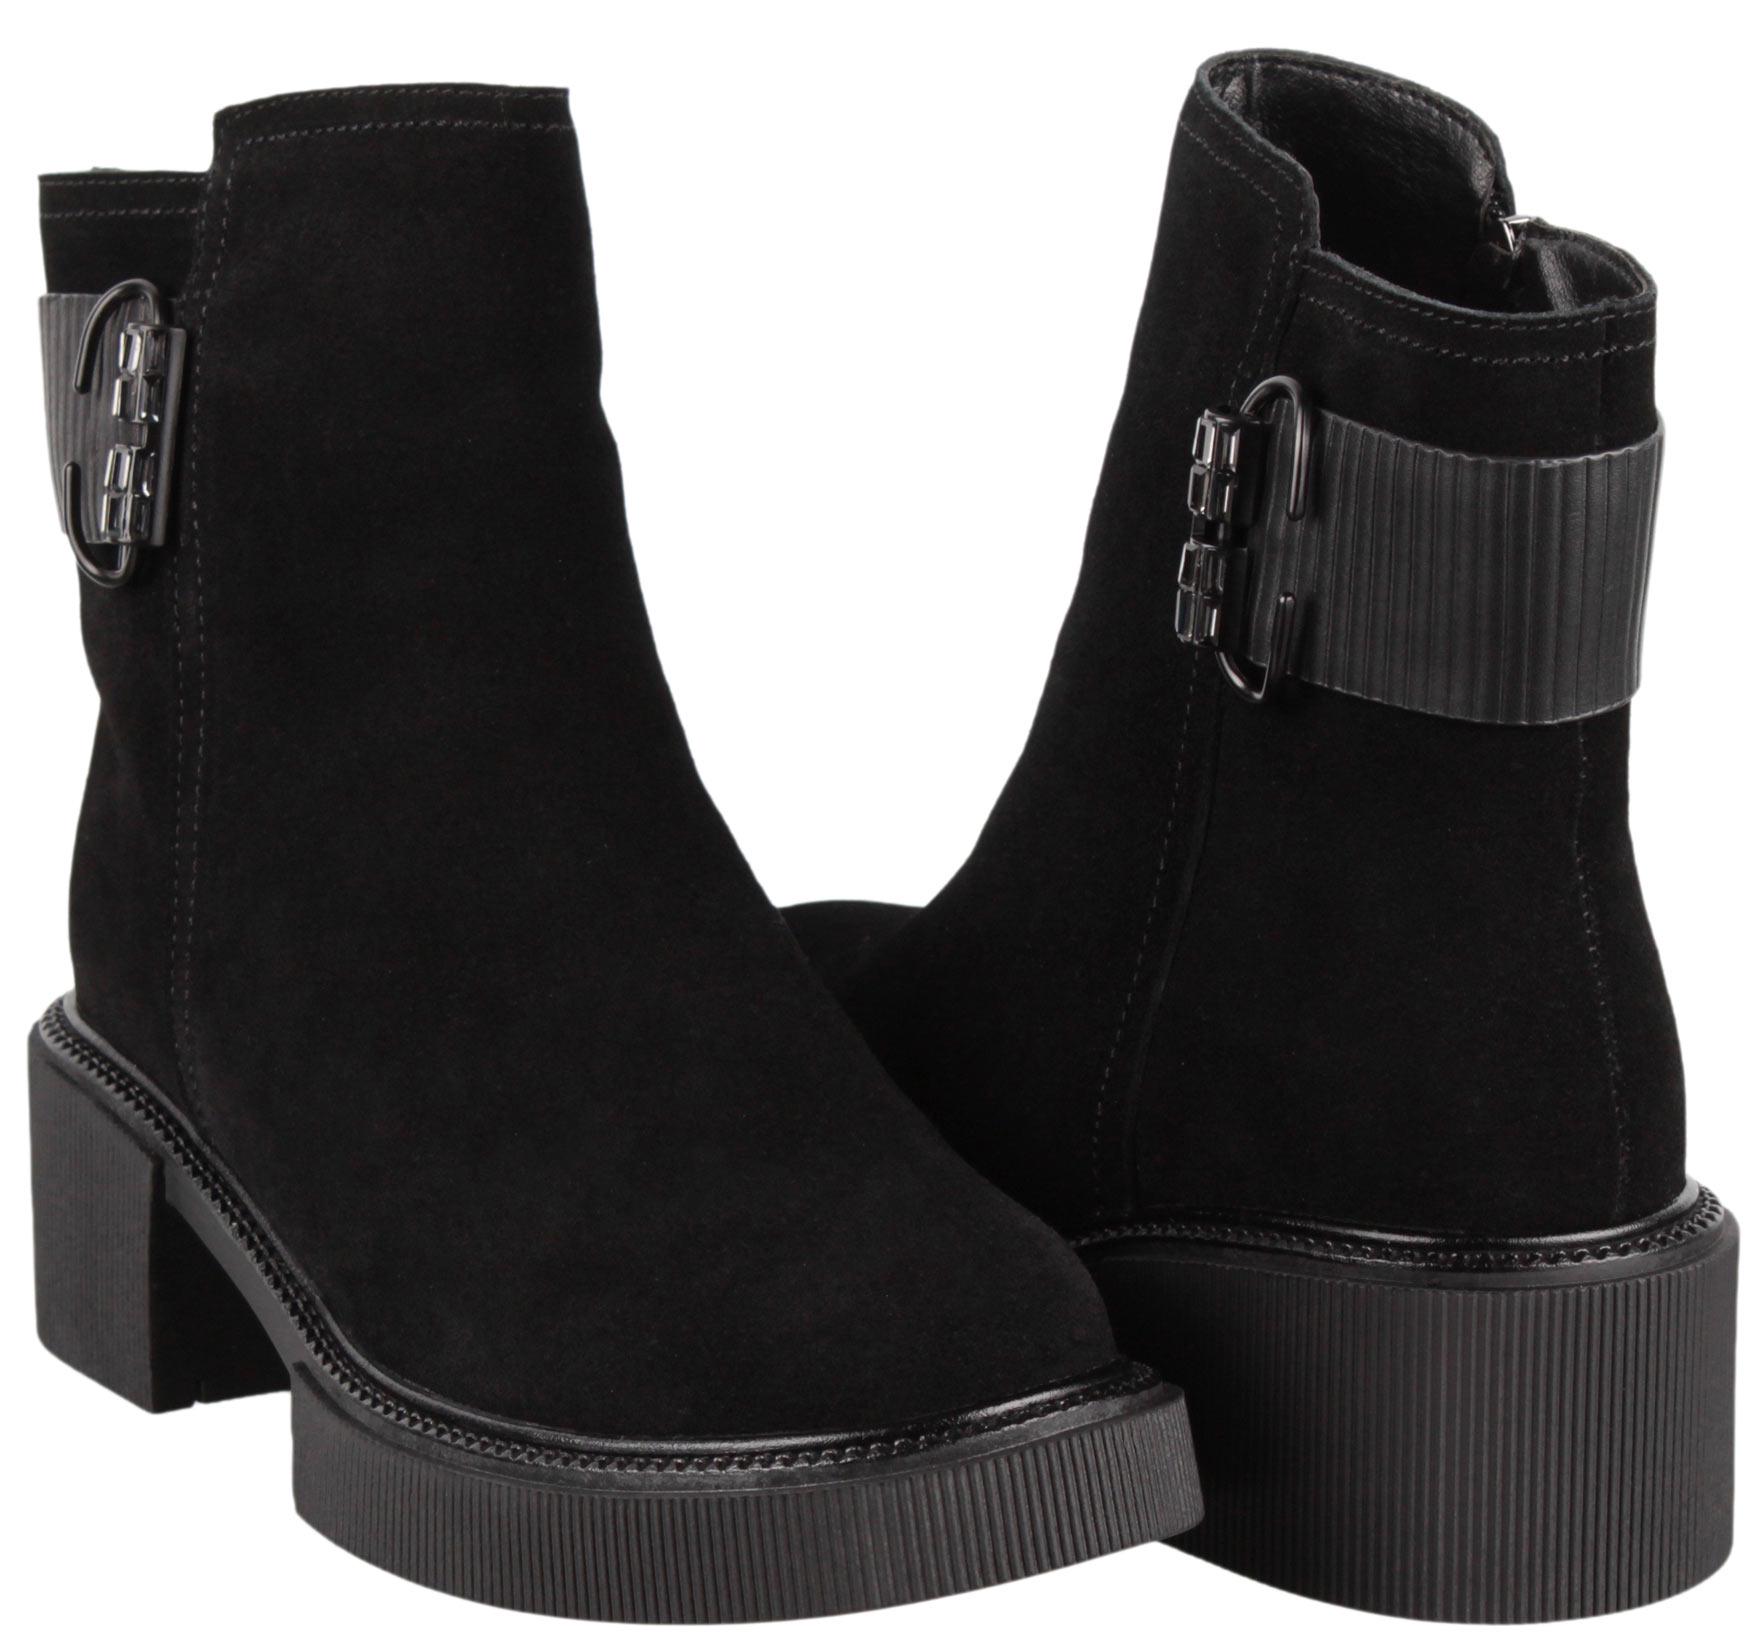 Ботинки женские Oeego на каблуке р. 37 Черный (198654_37)